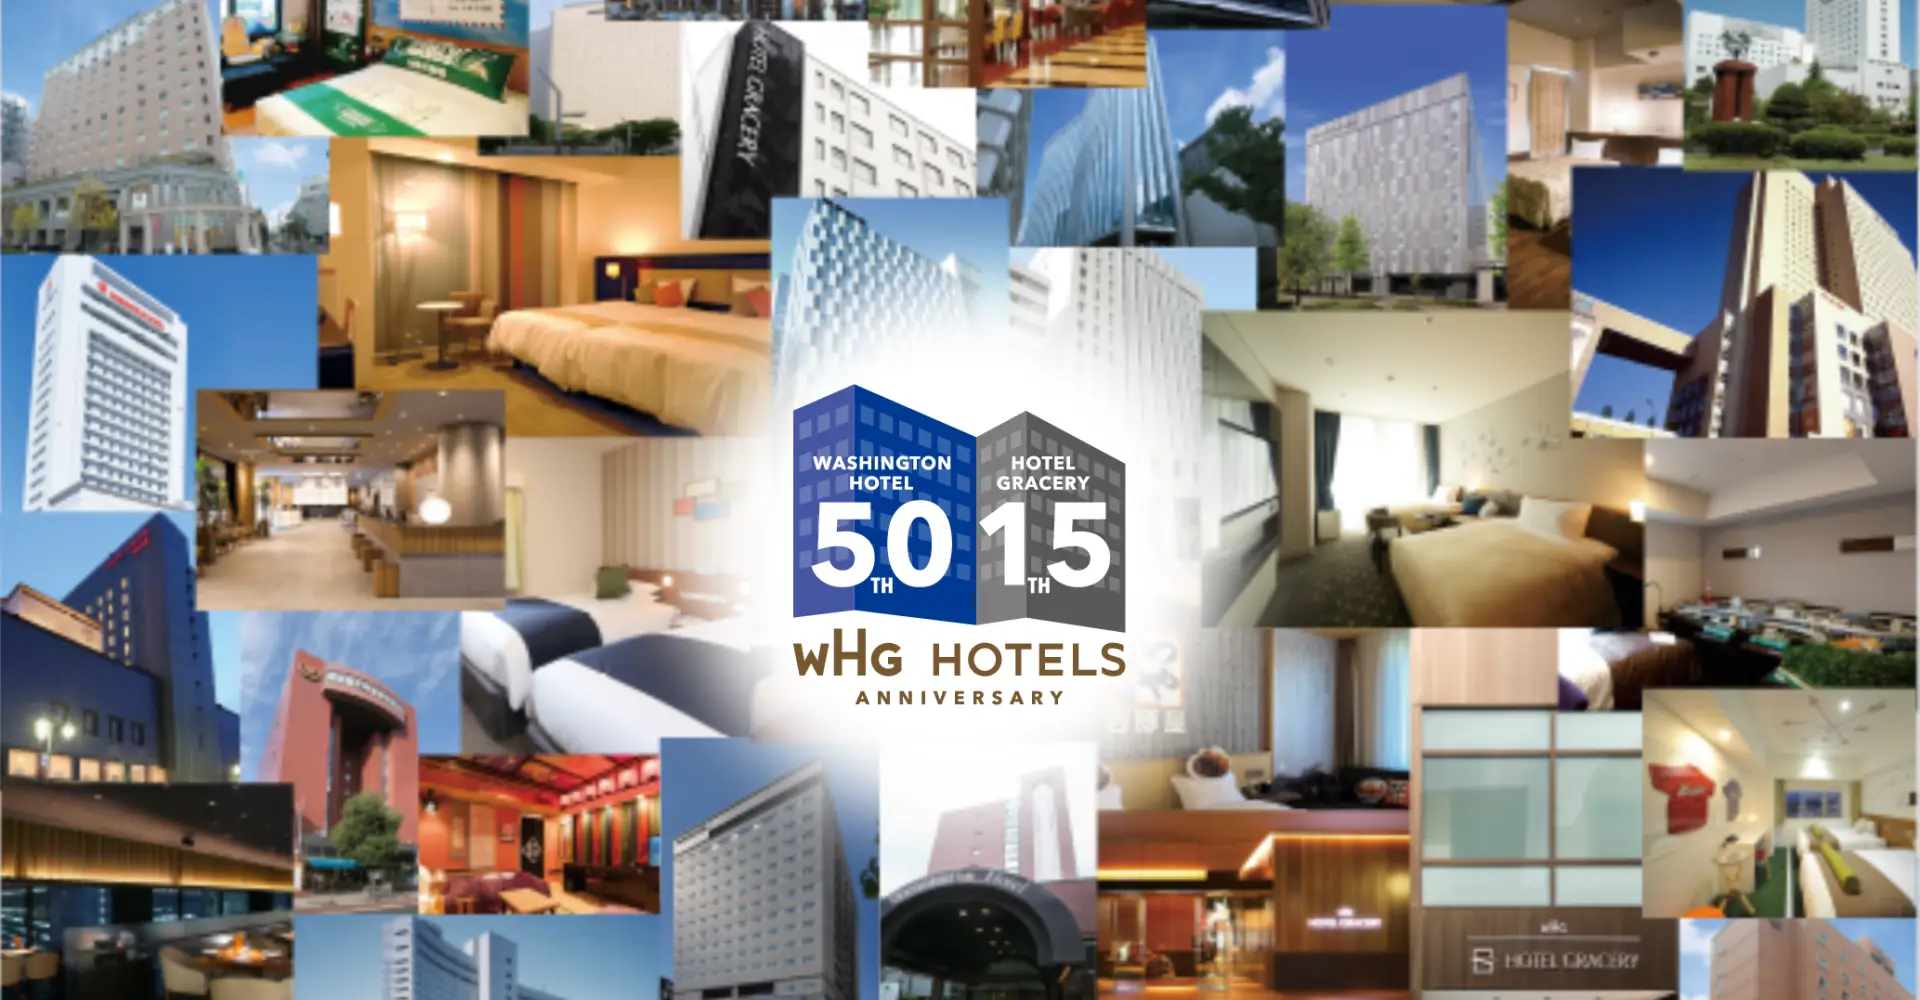 WHG hotels 50th & 15th ANNIVERSARY CAMPAIGN